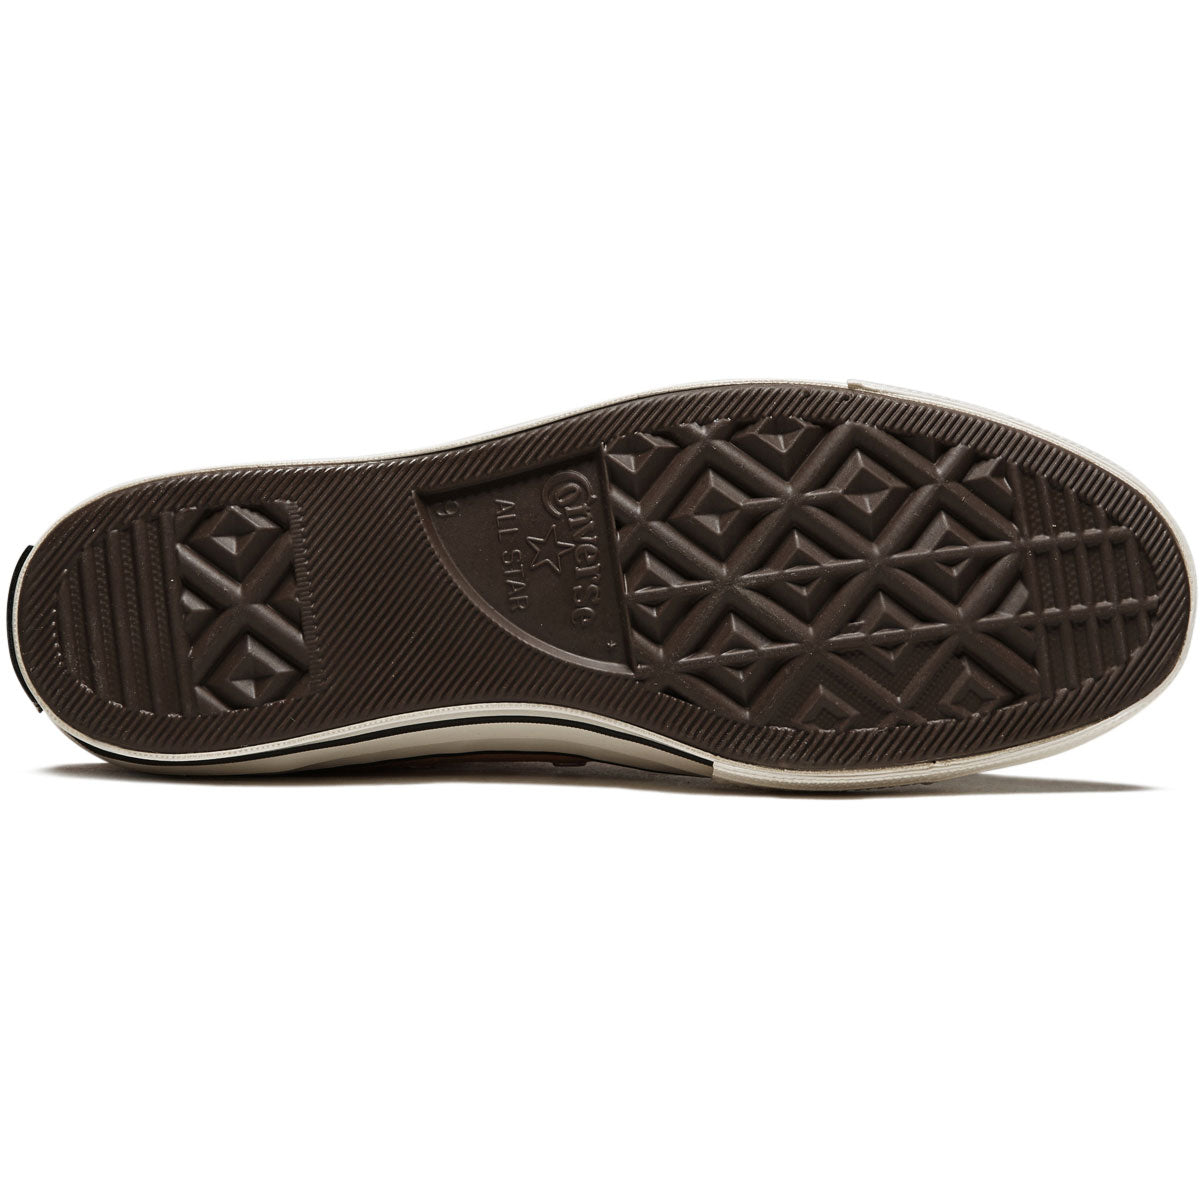 Converse Chuck 70 Hi Shoes - Tiger Moth/Egret/Black image 4